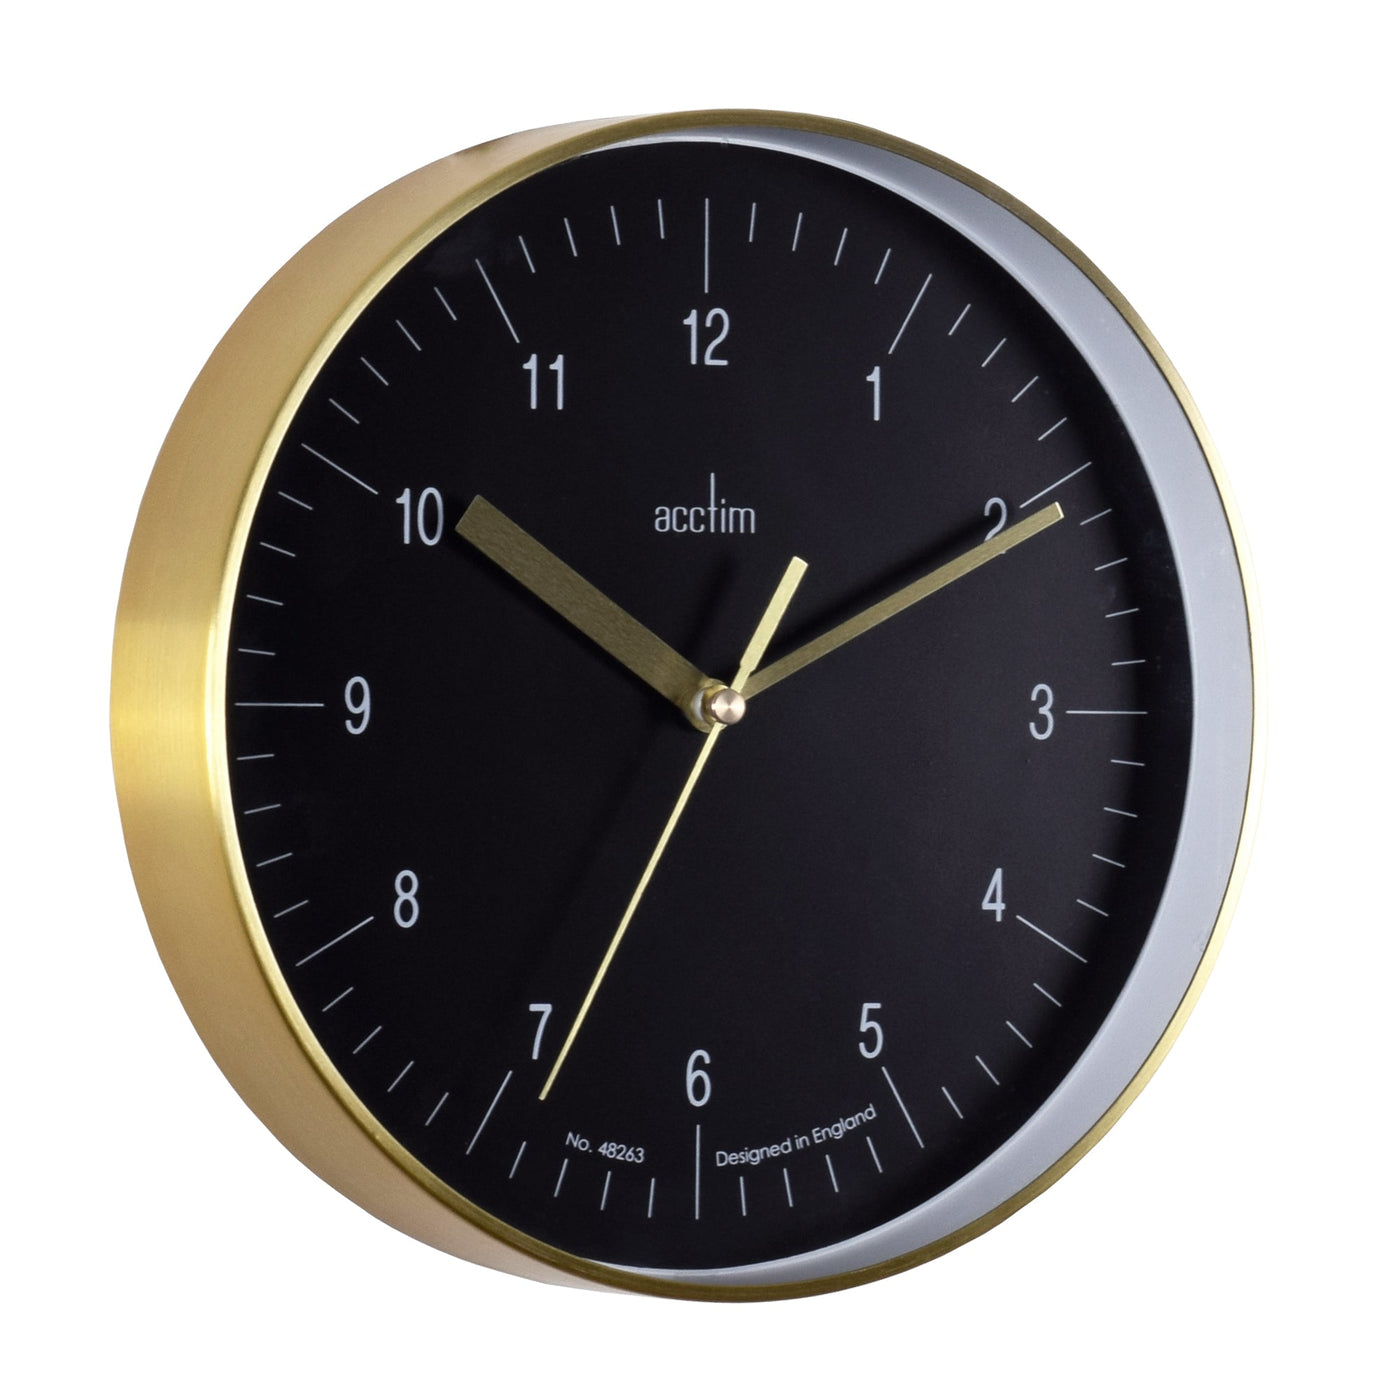 Acctim Stetson Wall Clock Brass Black Dial - timeframedclocks